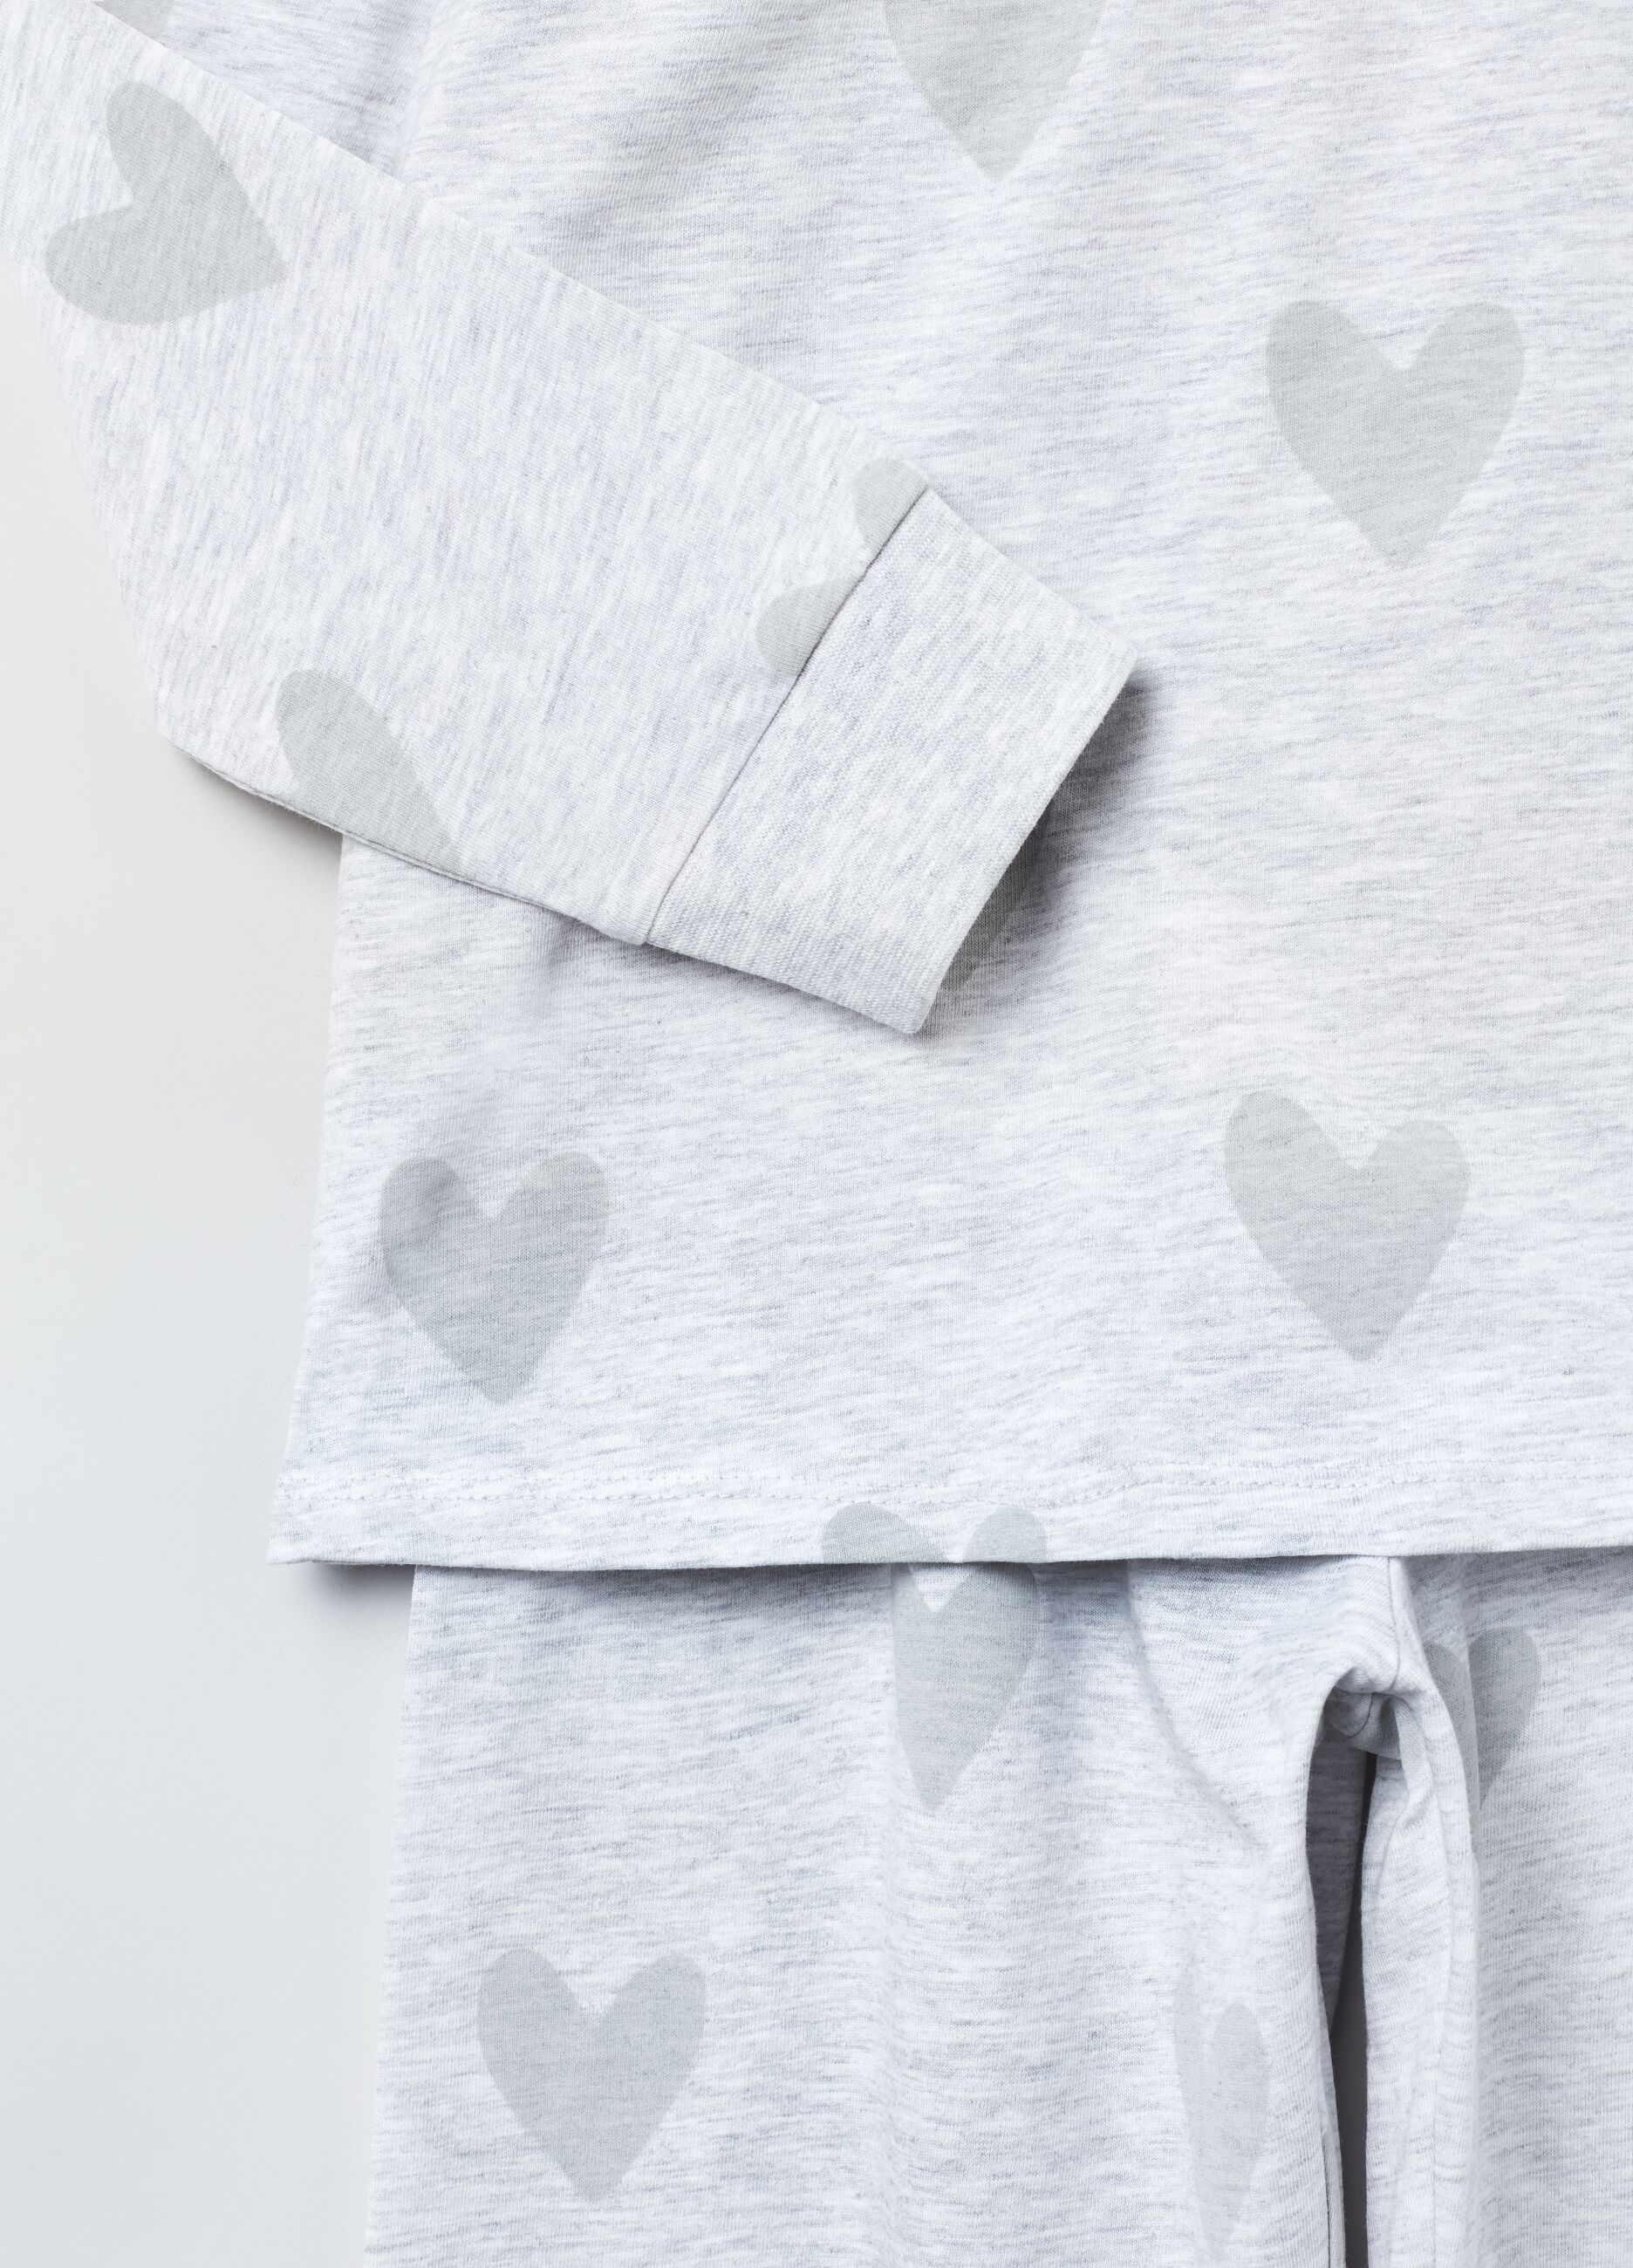 Pijama largo de algodón estampado corazones